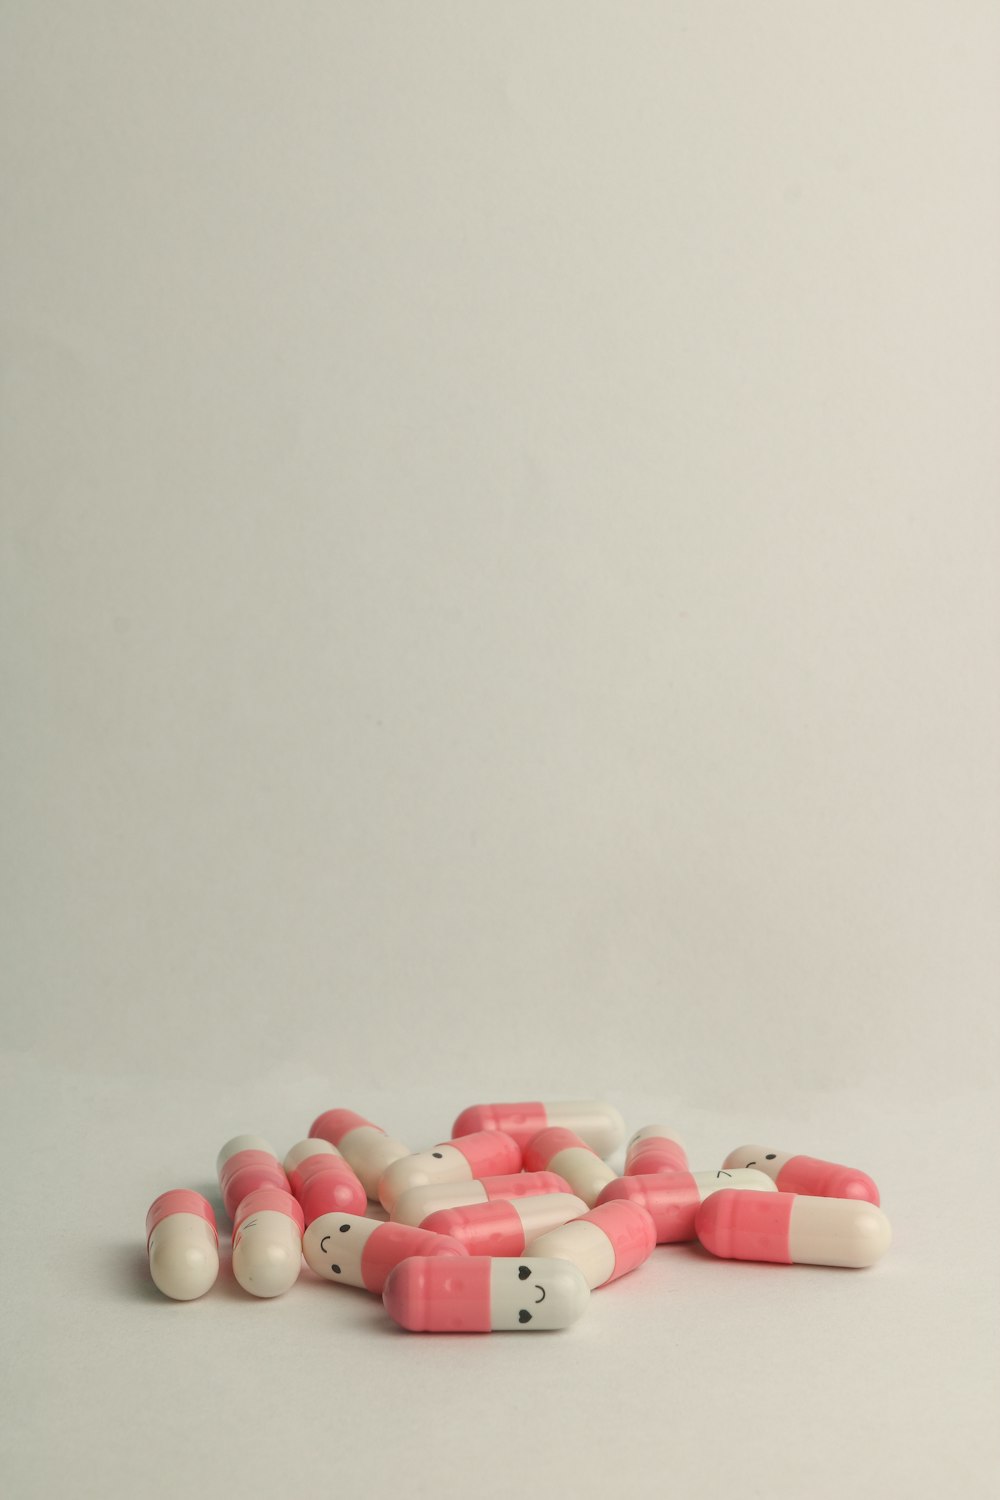 분홍색과 흰색 약물 알약